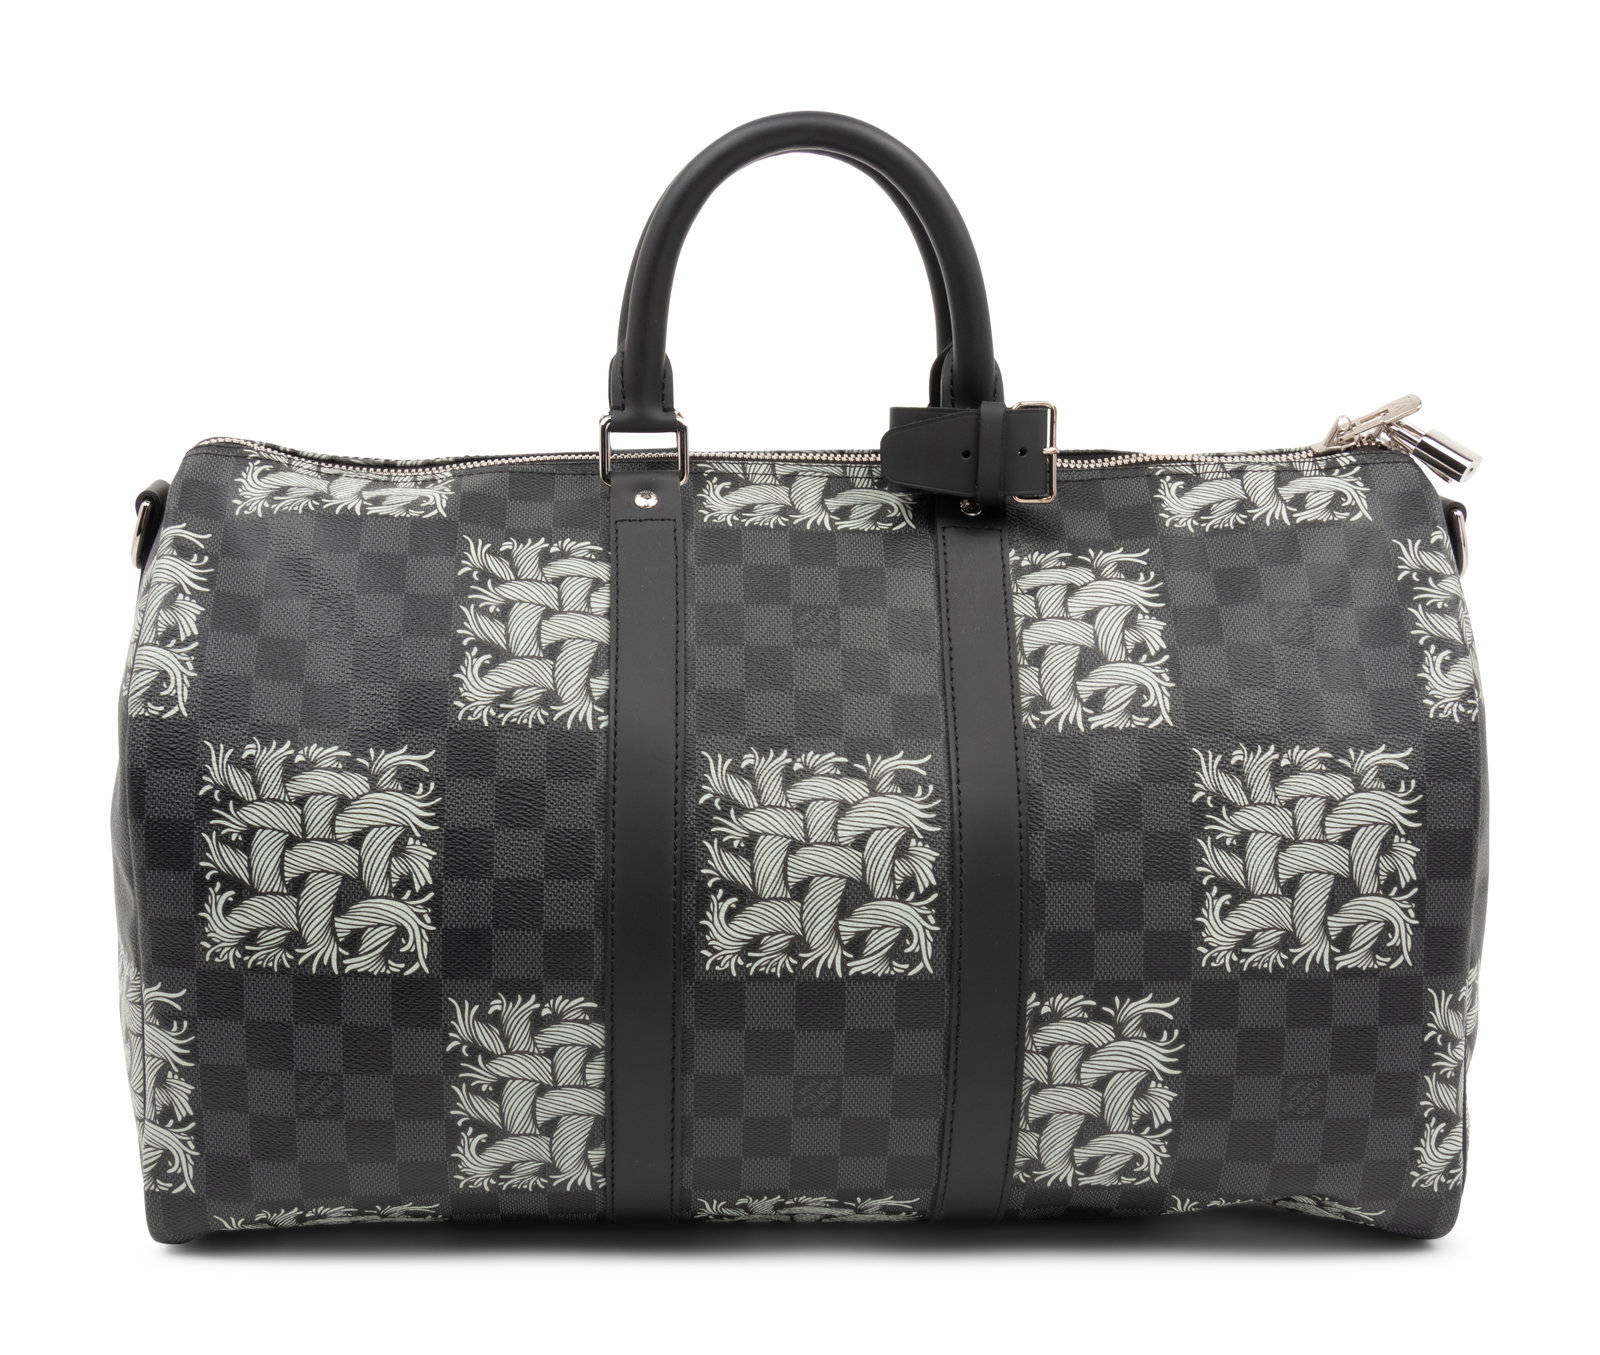 Louis Vuitton Damier Graphite Christopher Messenger Bag Auction